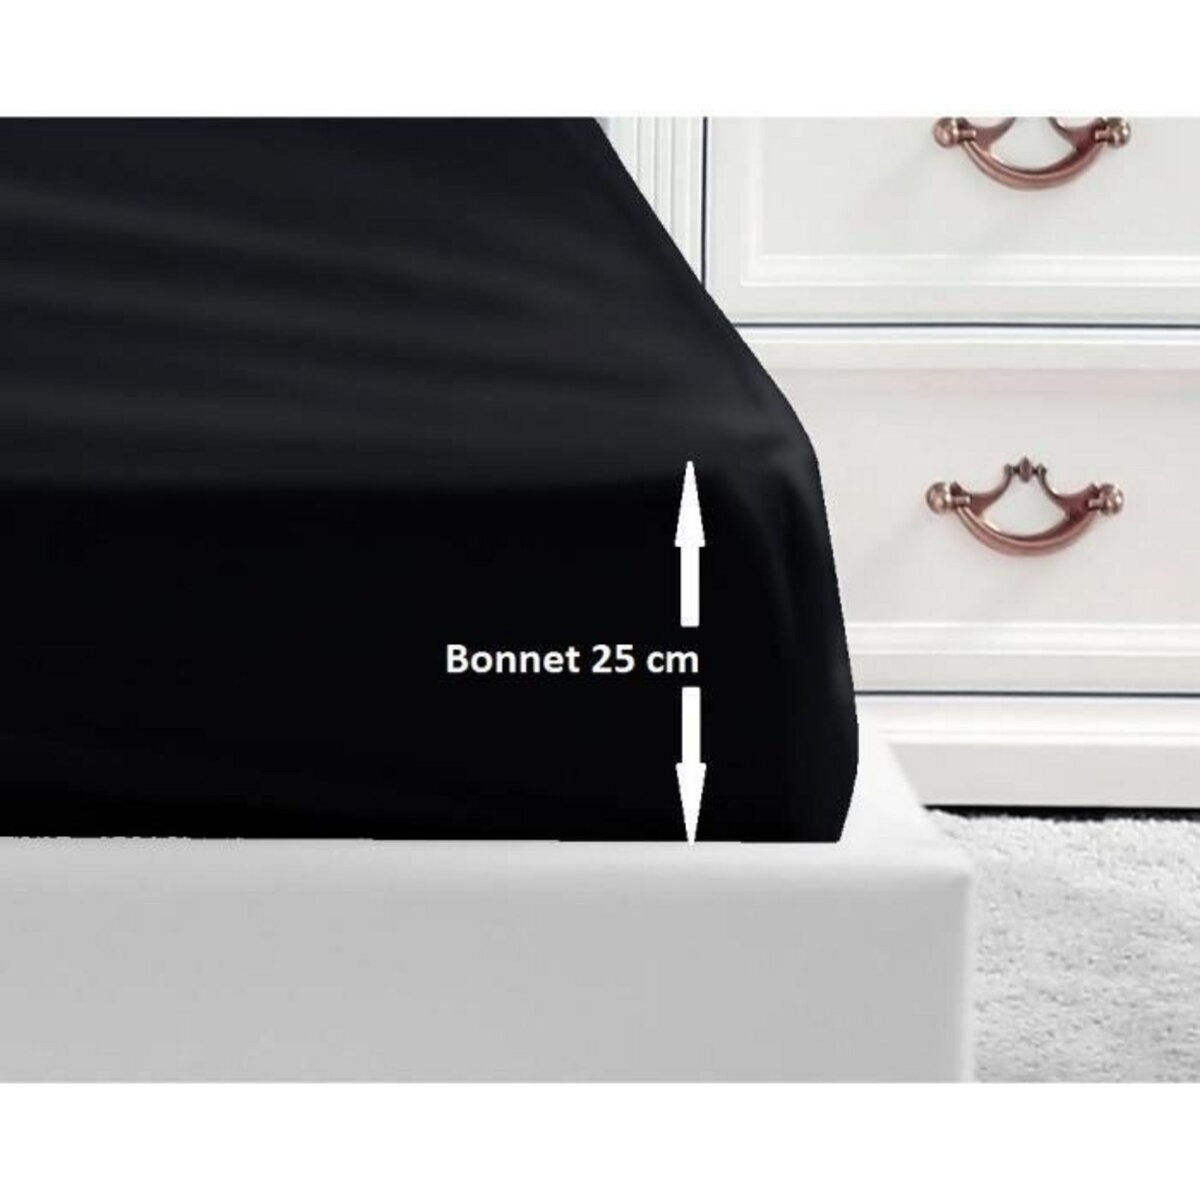 Drap-housse Coton Blanc Bonnet 25 - 140x190 cm, 100% coton